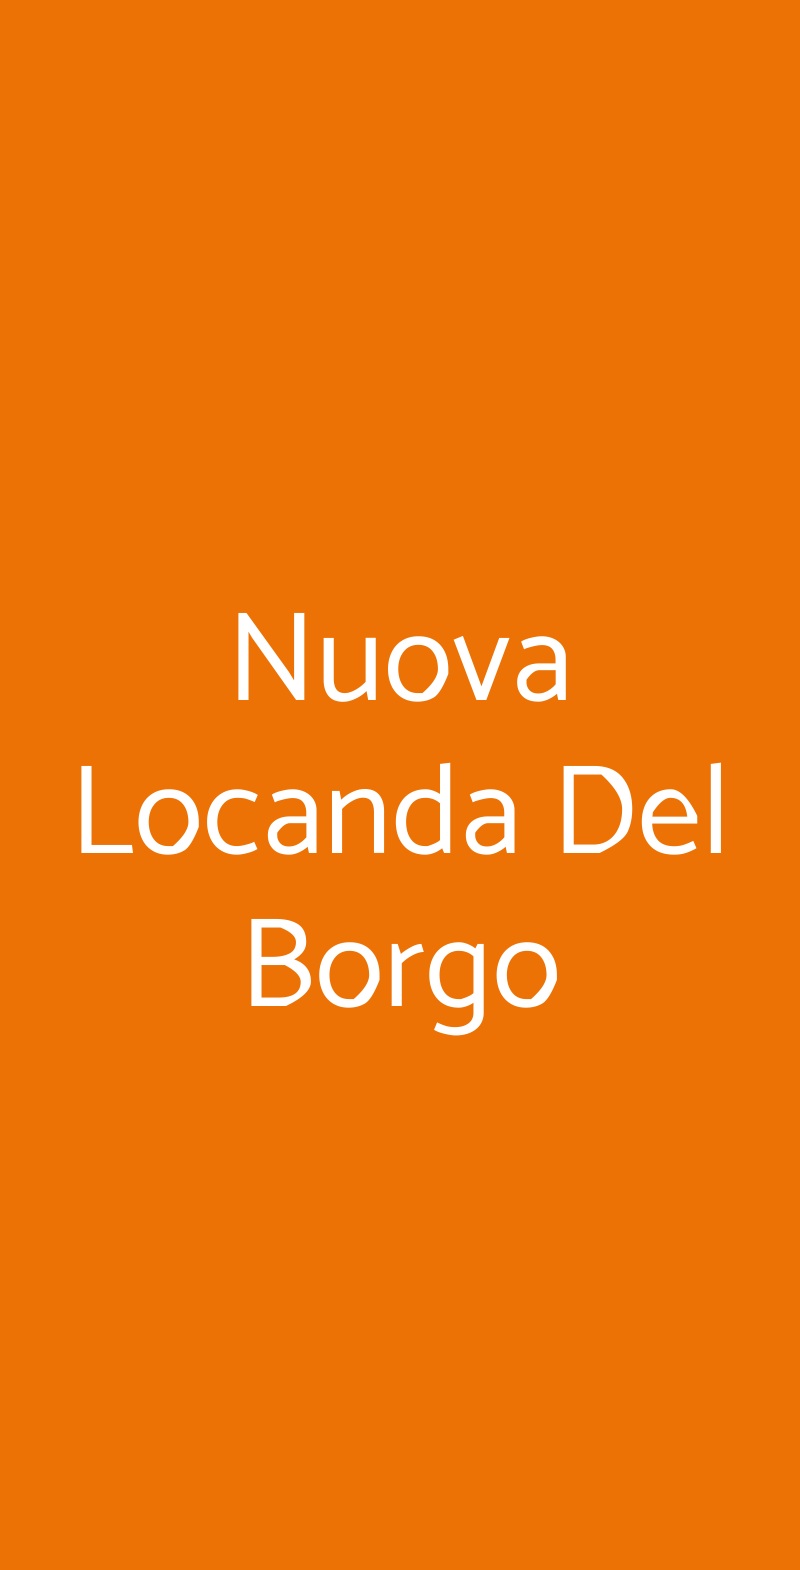 Nuova Locanda Del Borgo Stanghella menù 1 pagina